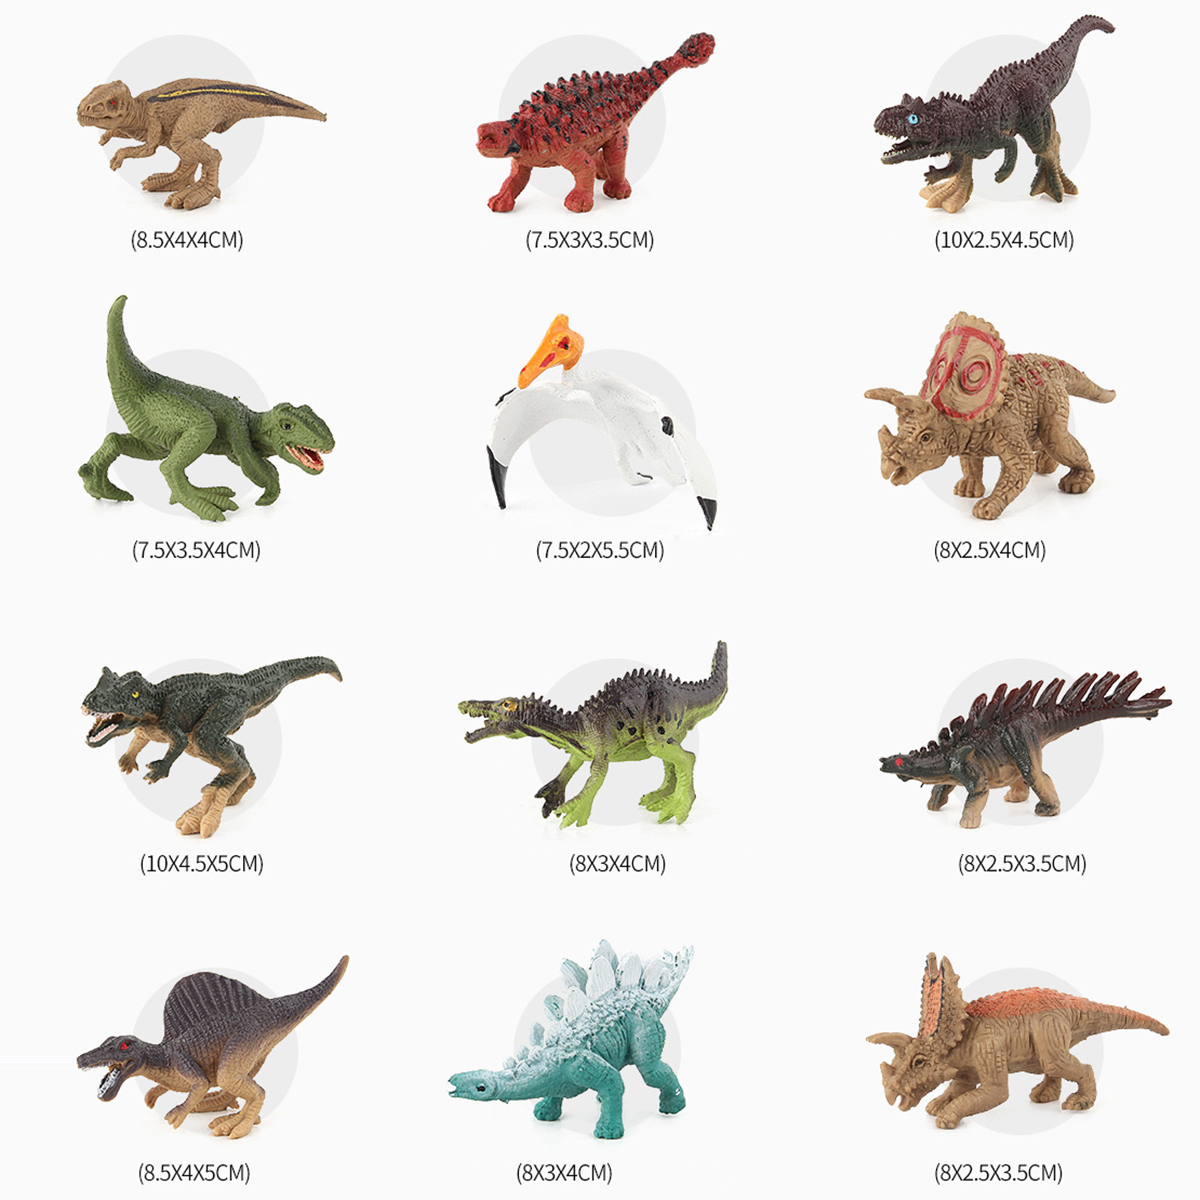 Mô hình đồ chơi khủng long kỉ Jurassic World Dinosaurs cho bé (Bộ 12 khủng long)